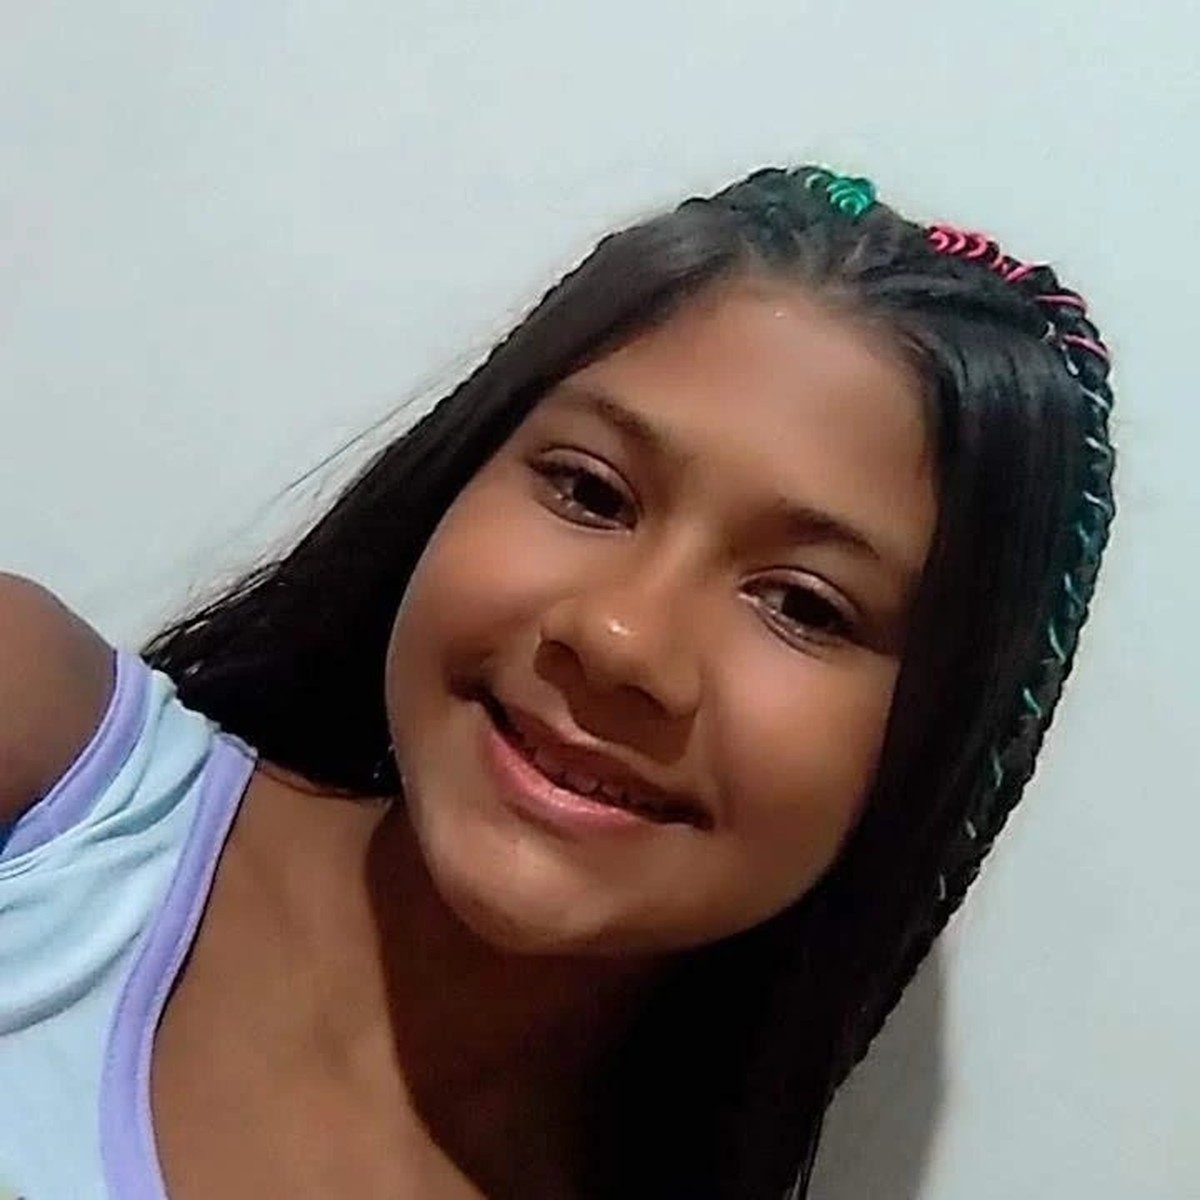 Vídeo: perfil fake pede Pix em nome de menina desaparecida • Jornal Diário  do Pará